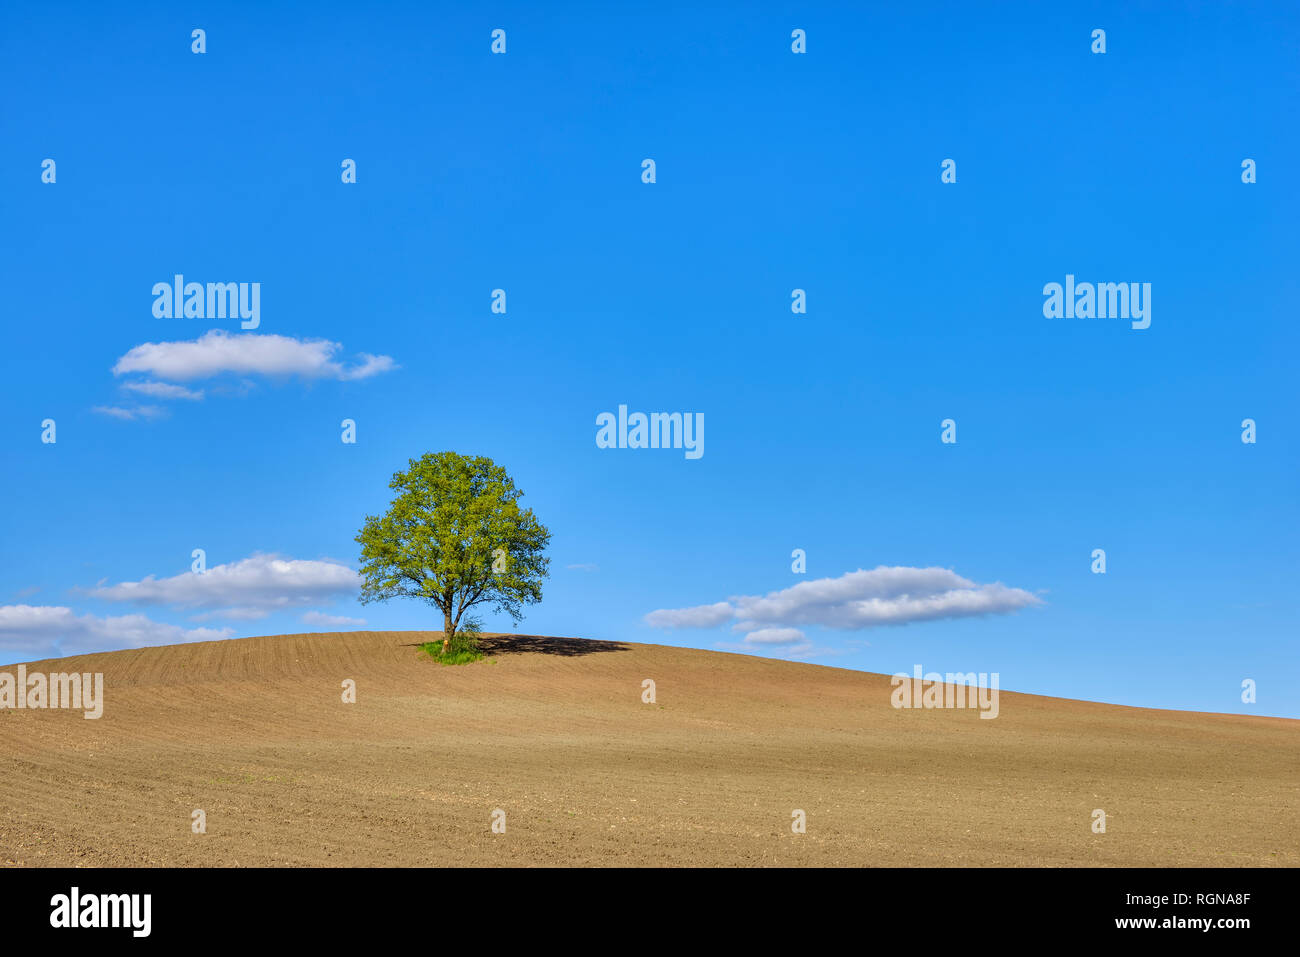 Single tree in a field, Bavaria, Germany Stock Photo